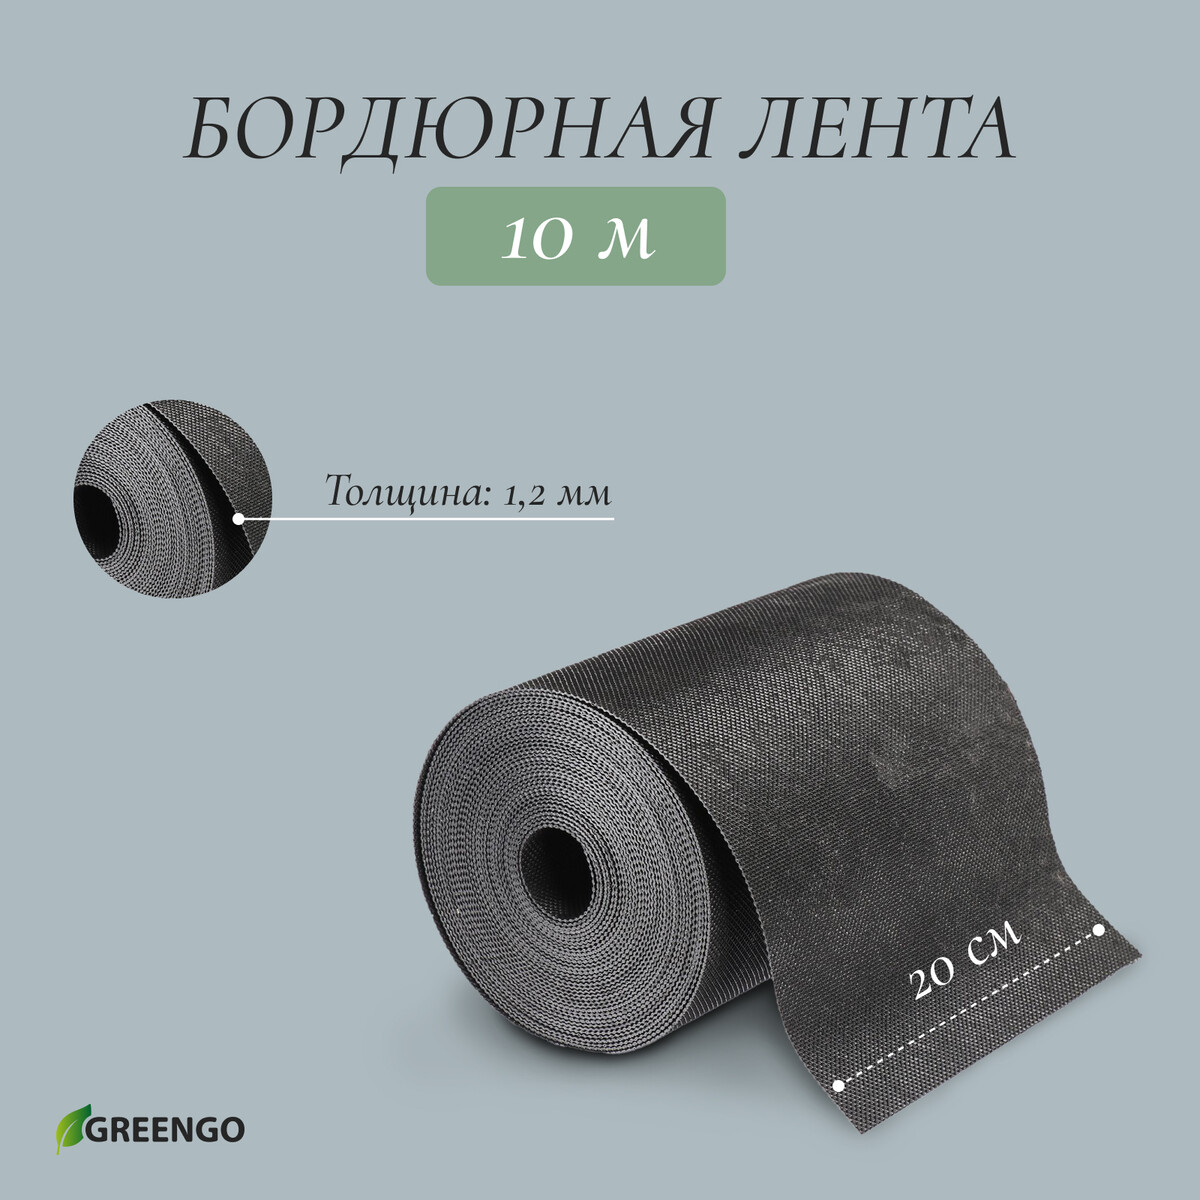 Лента бордюрная, 0.2 × 10 м, толщина 1.2 мм, пластиковая, черная, greengo кассета для рассады greengo на 4 ячейки по 180 мл пластиковая черная 18 × 13 × 6 см